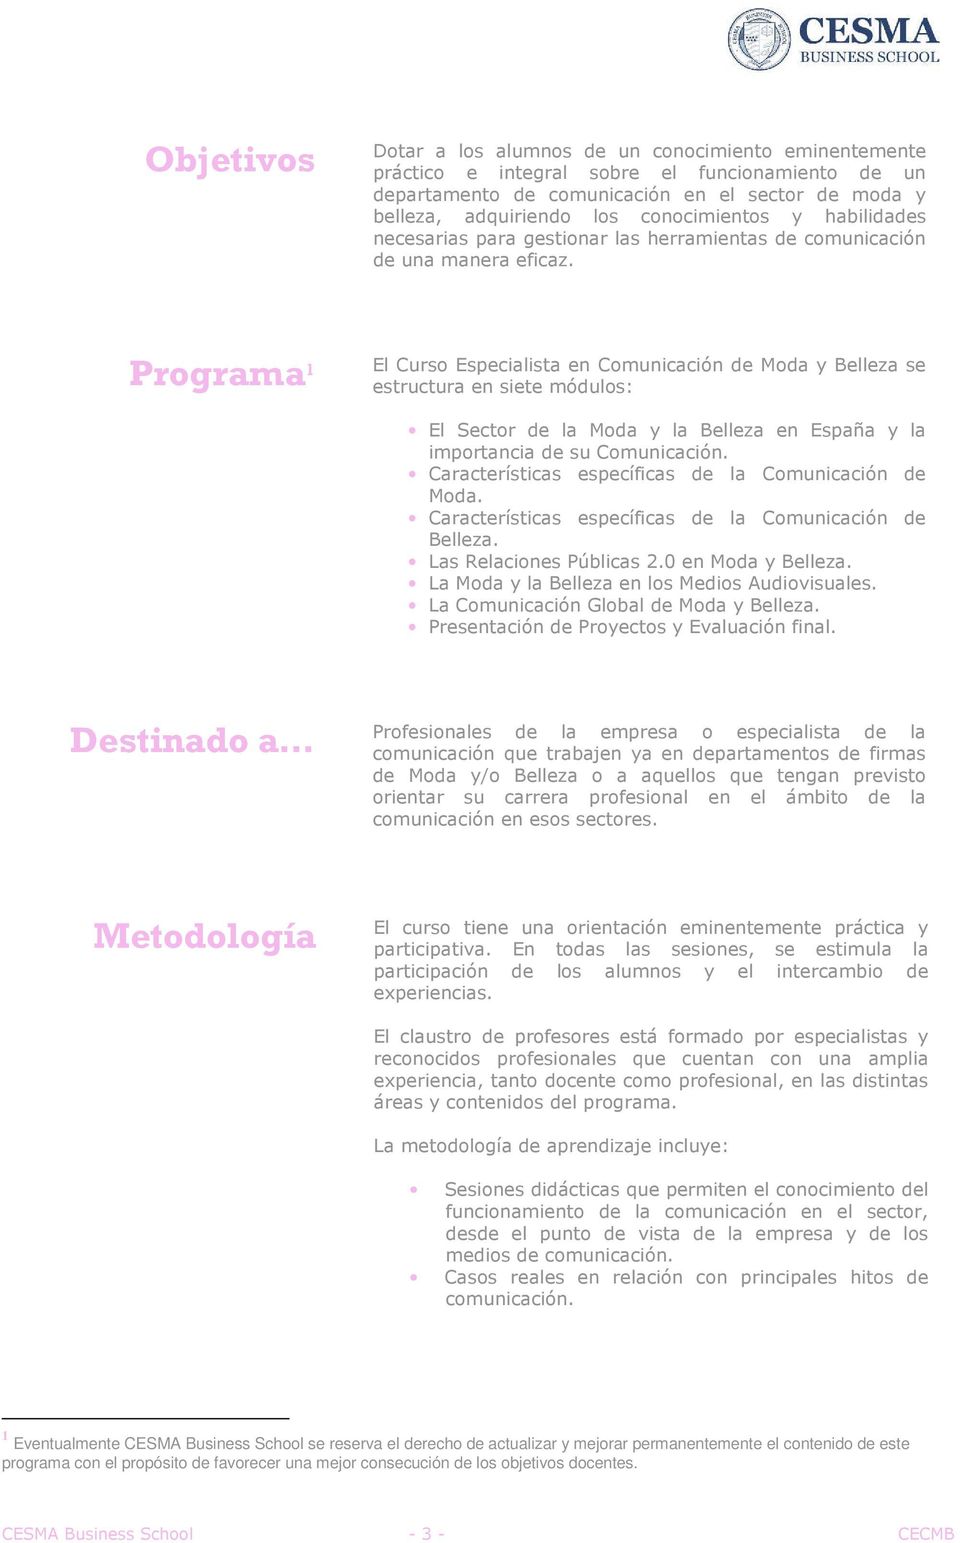 Programa 1 El Curso Especialista en Comunicación de Moda y Belleza se estructura en siete módulos: El Sector de la Moda y la Belleza en España y la importancia de su Comunicación.